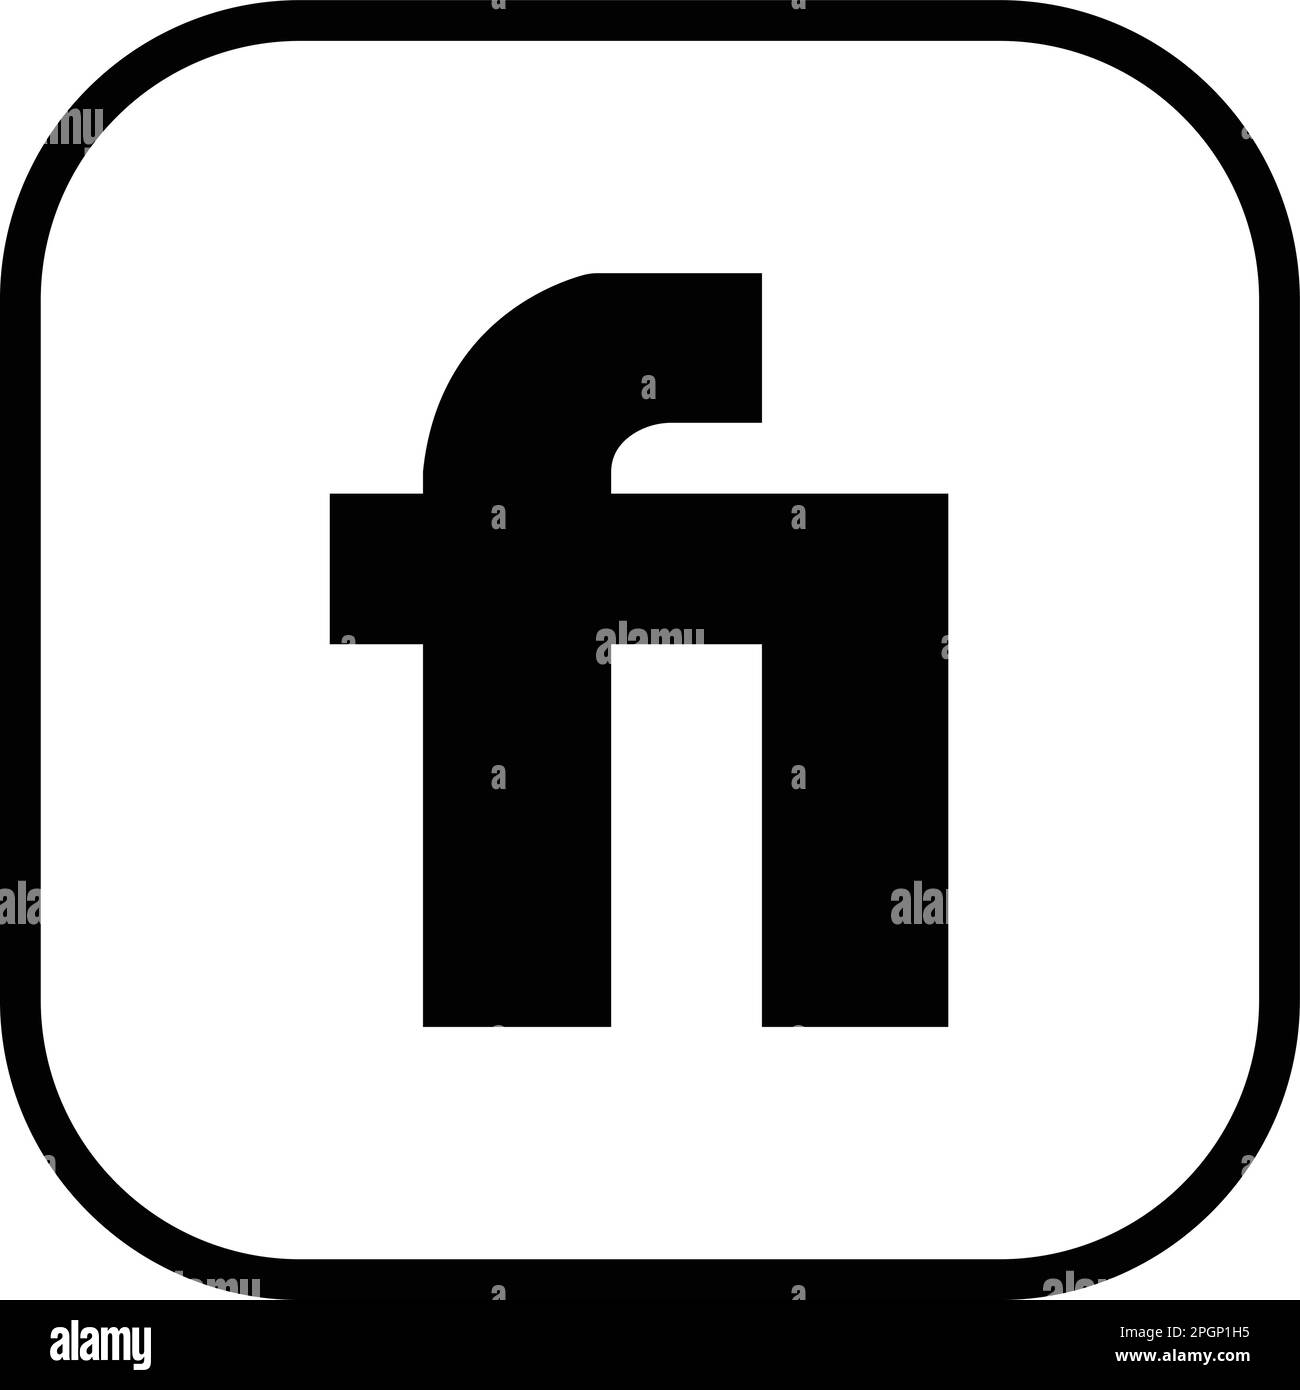 Le marché de freelance icon d'application Fiverr est parfait pour une utilisation dans n'importe quel projet d'application mobile. Un design moderne avec le logo emblématique Fiver dans un style épuré. Utilisez-le o Illustration de Vecteur